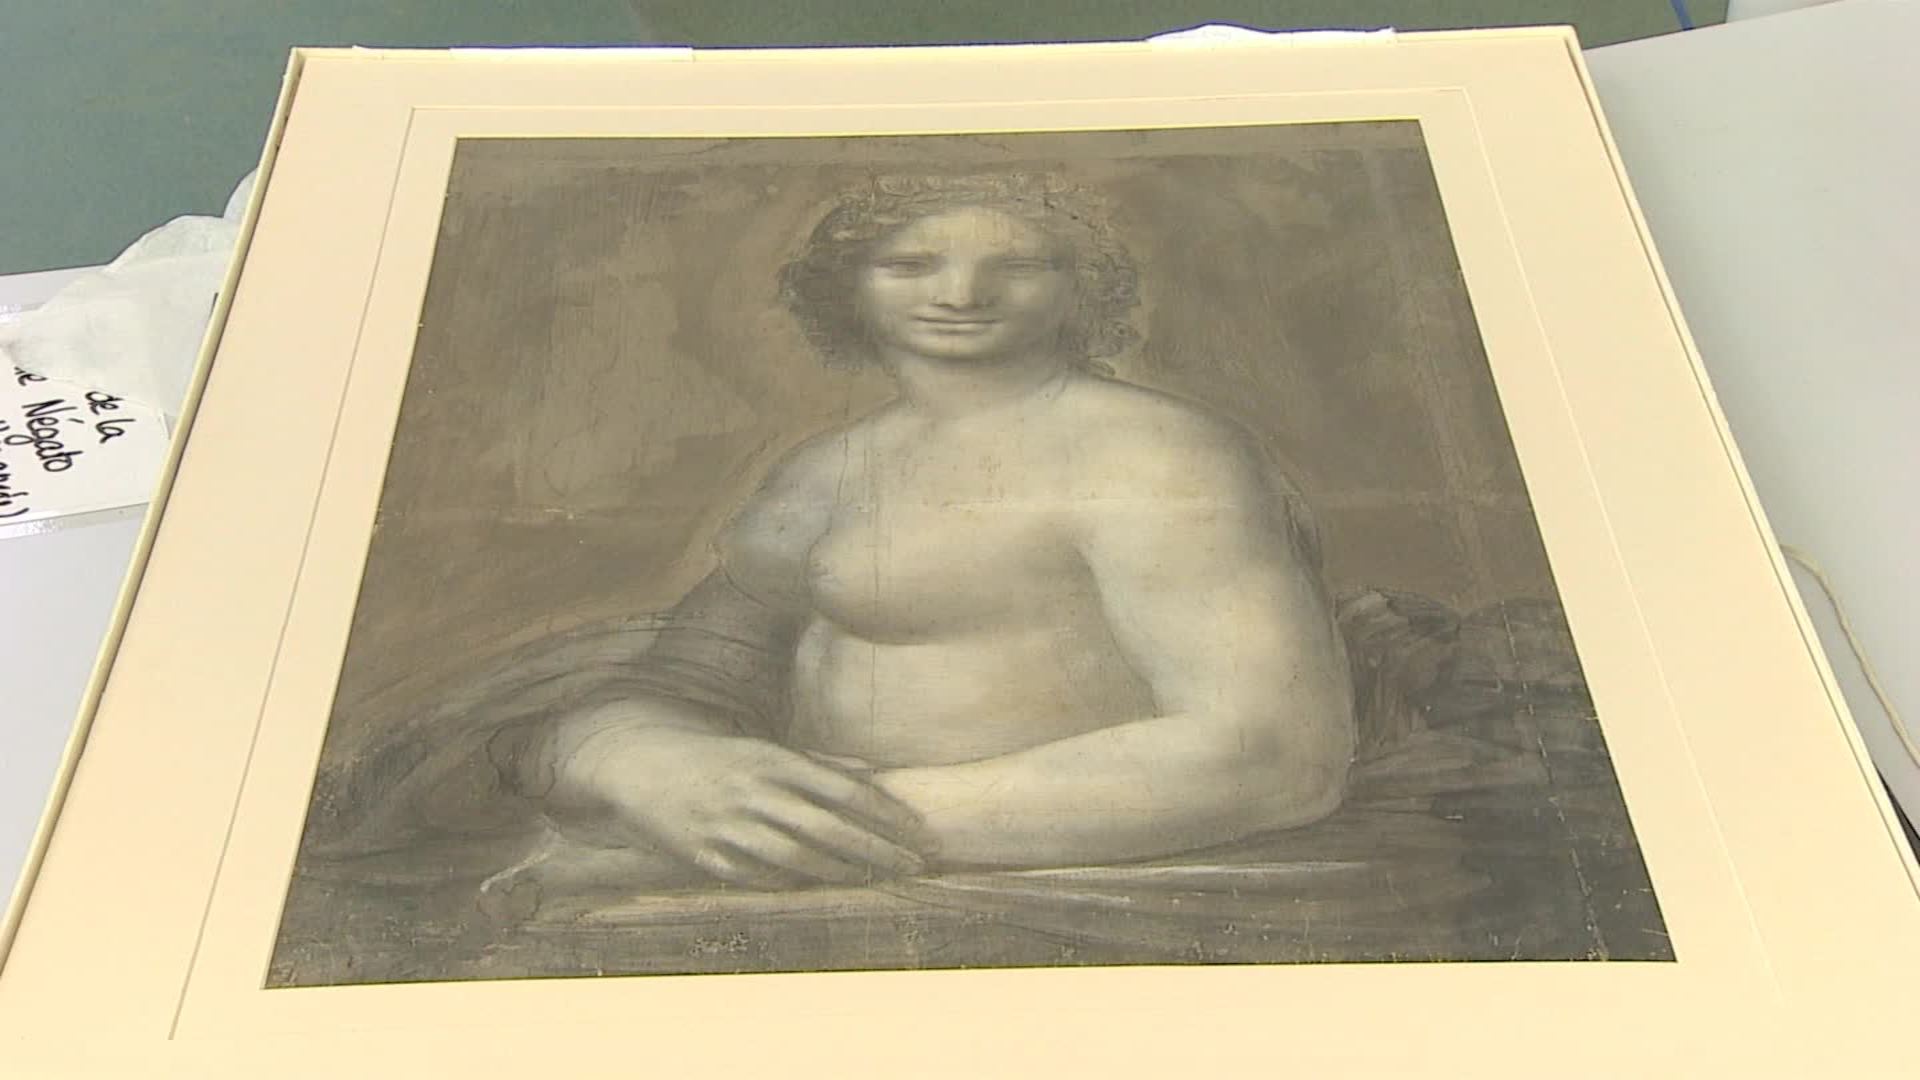 Mona Lisa desnuda, ¿el proyecto escondido de Da Vinci? - CNN Video